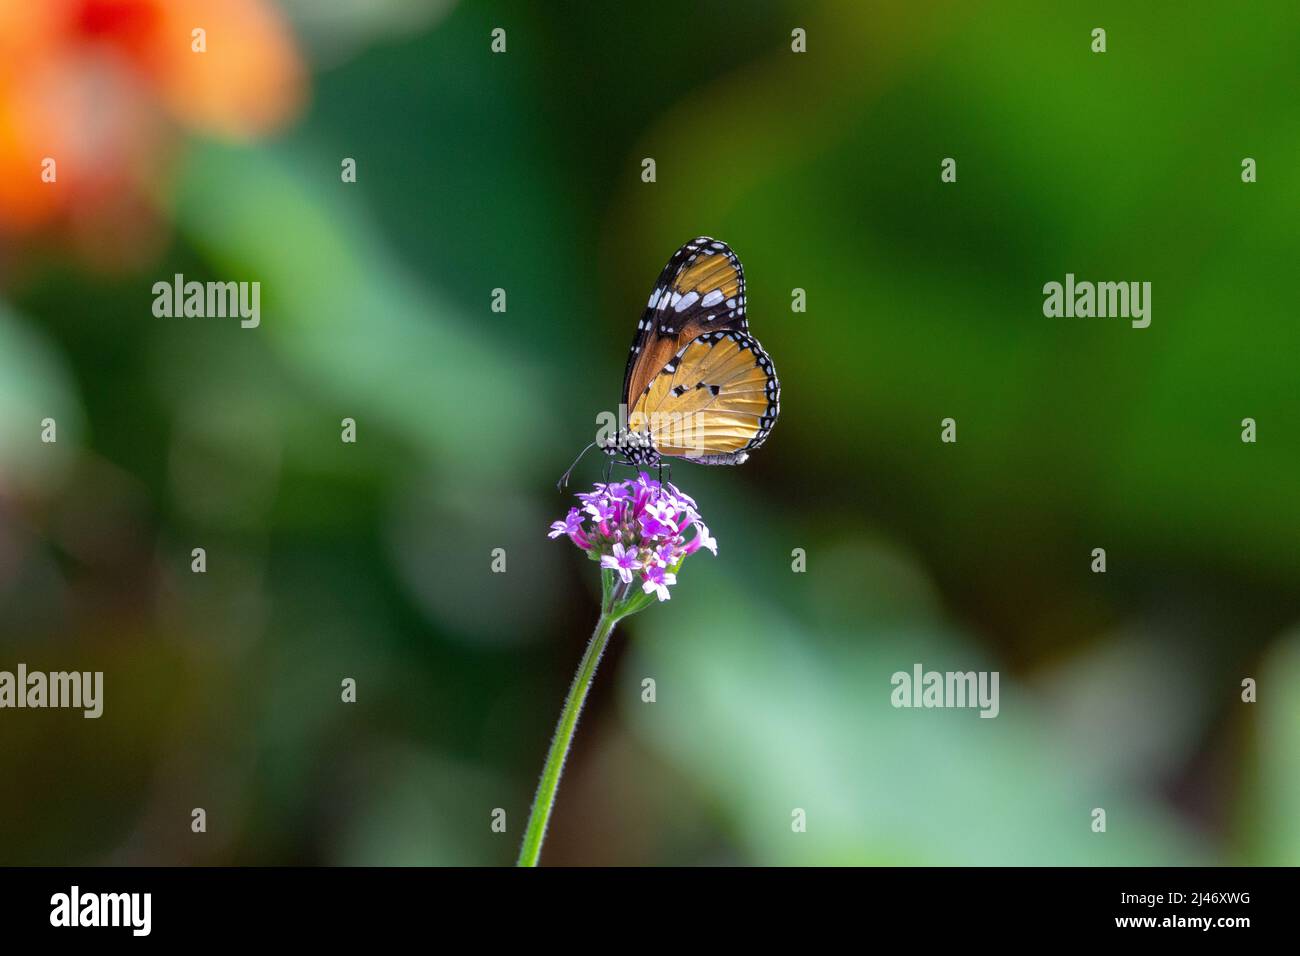 Papillon à tigre nu (Danaus chrysippus chrysippus) avec ailes fermées se nourrissant de petites fleurs violettes verticales isolées de feuilles vertes tropicales Banque D'Images